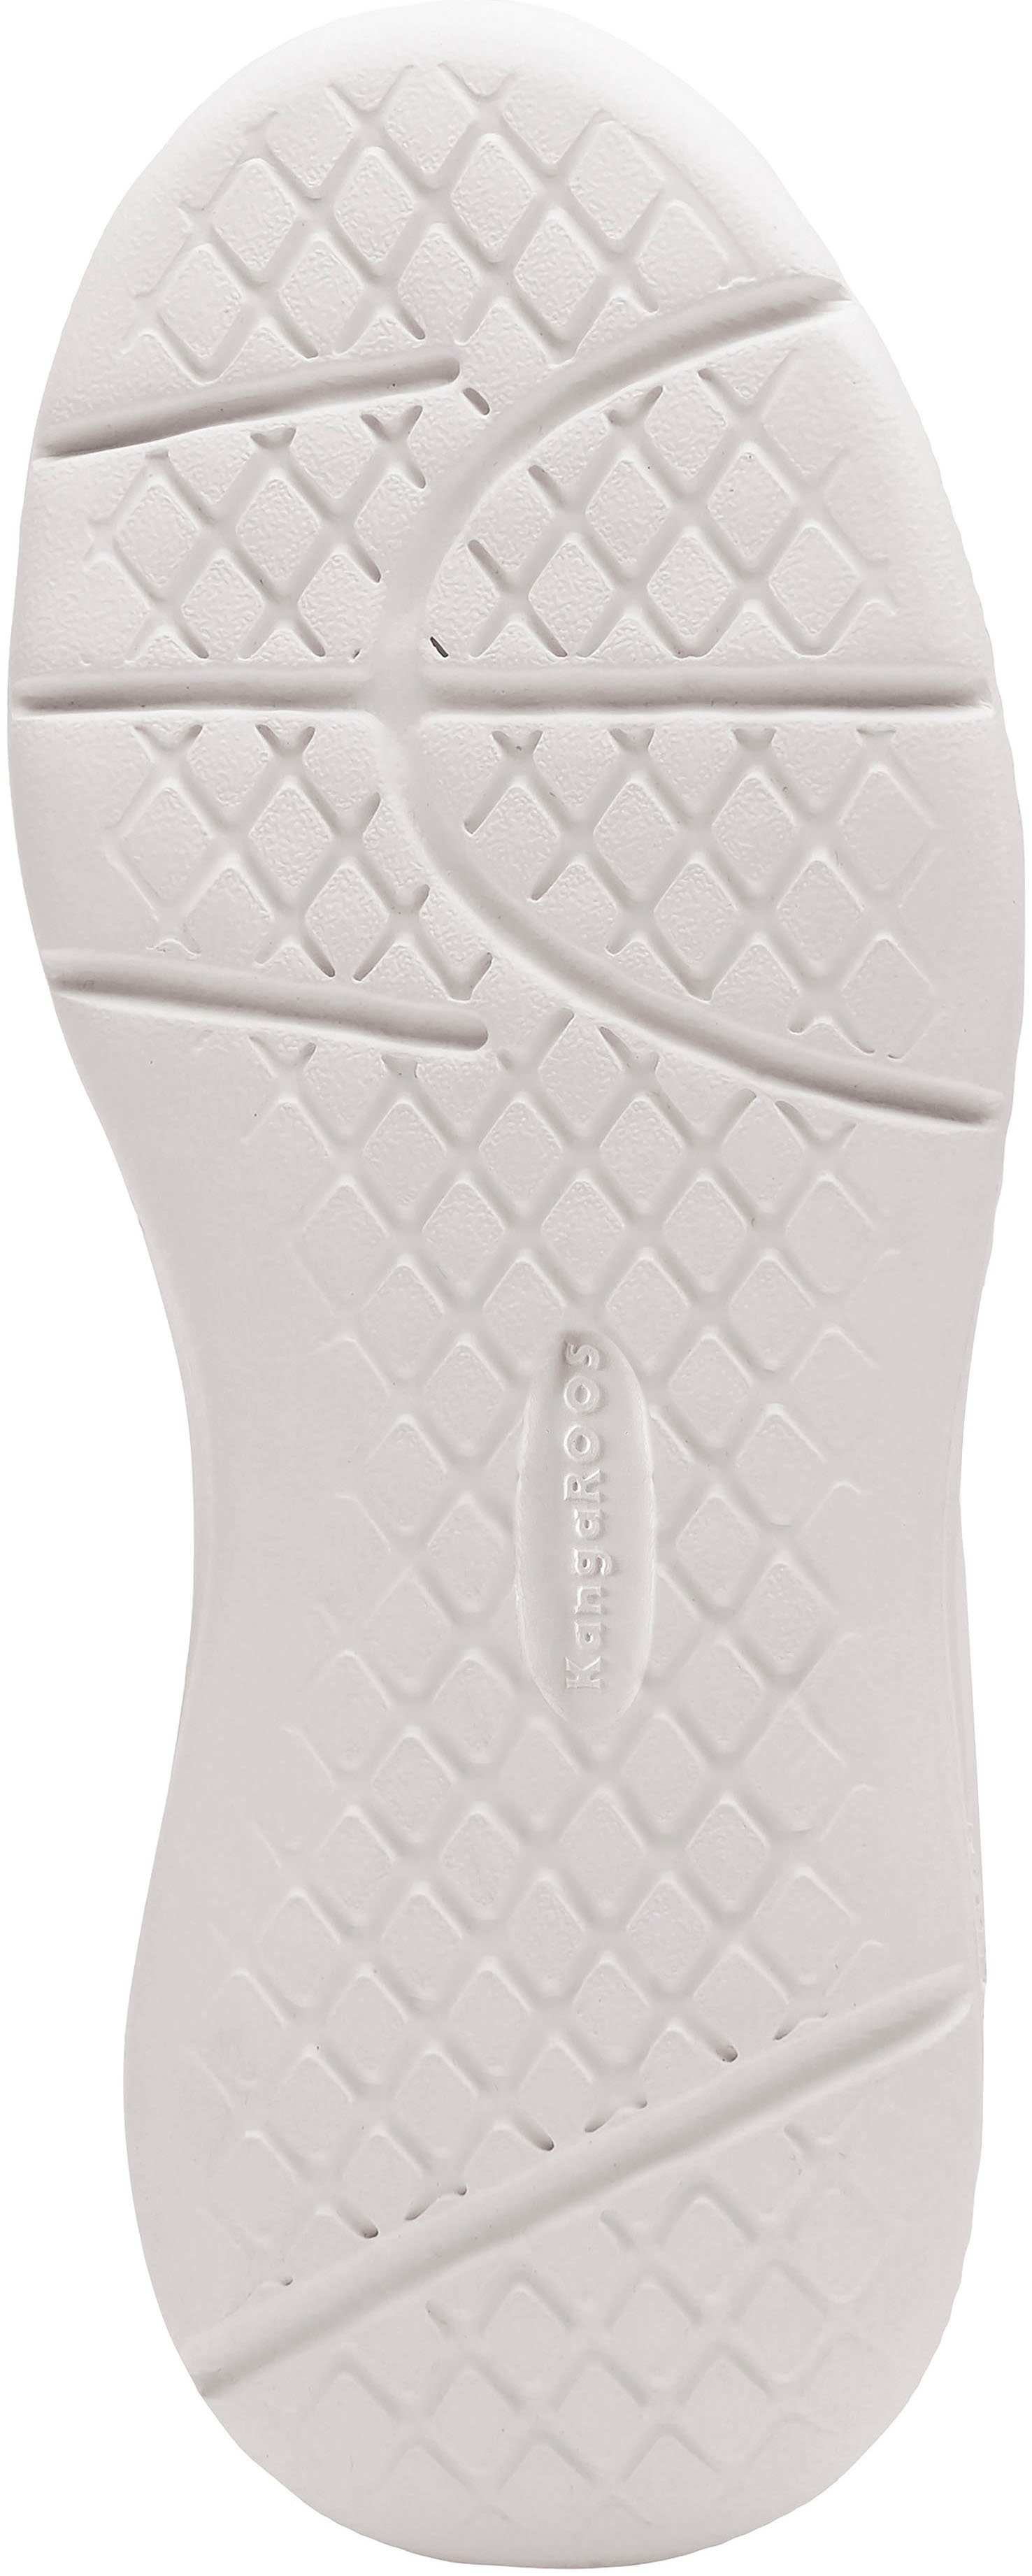 V schwarz-weiß mit Klettverschluss K-Ico Sneaker KangaROOS